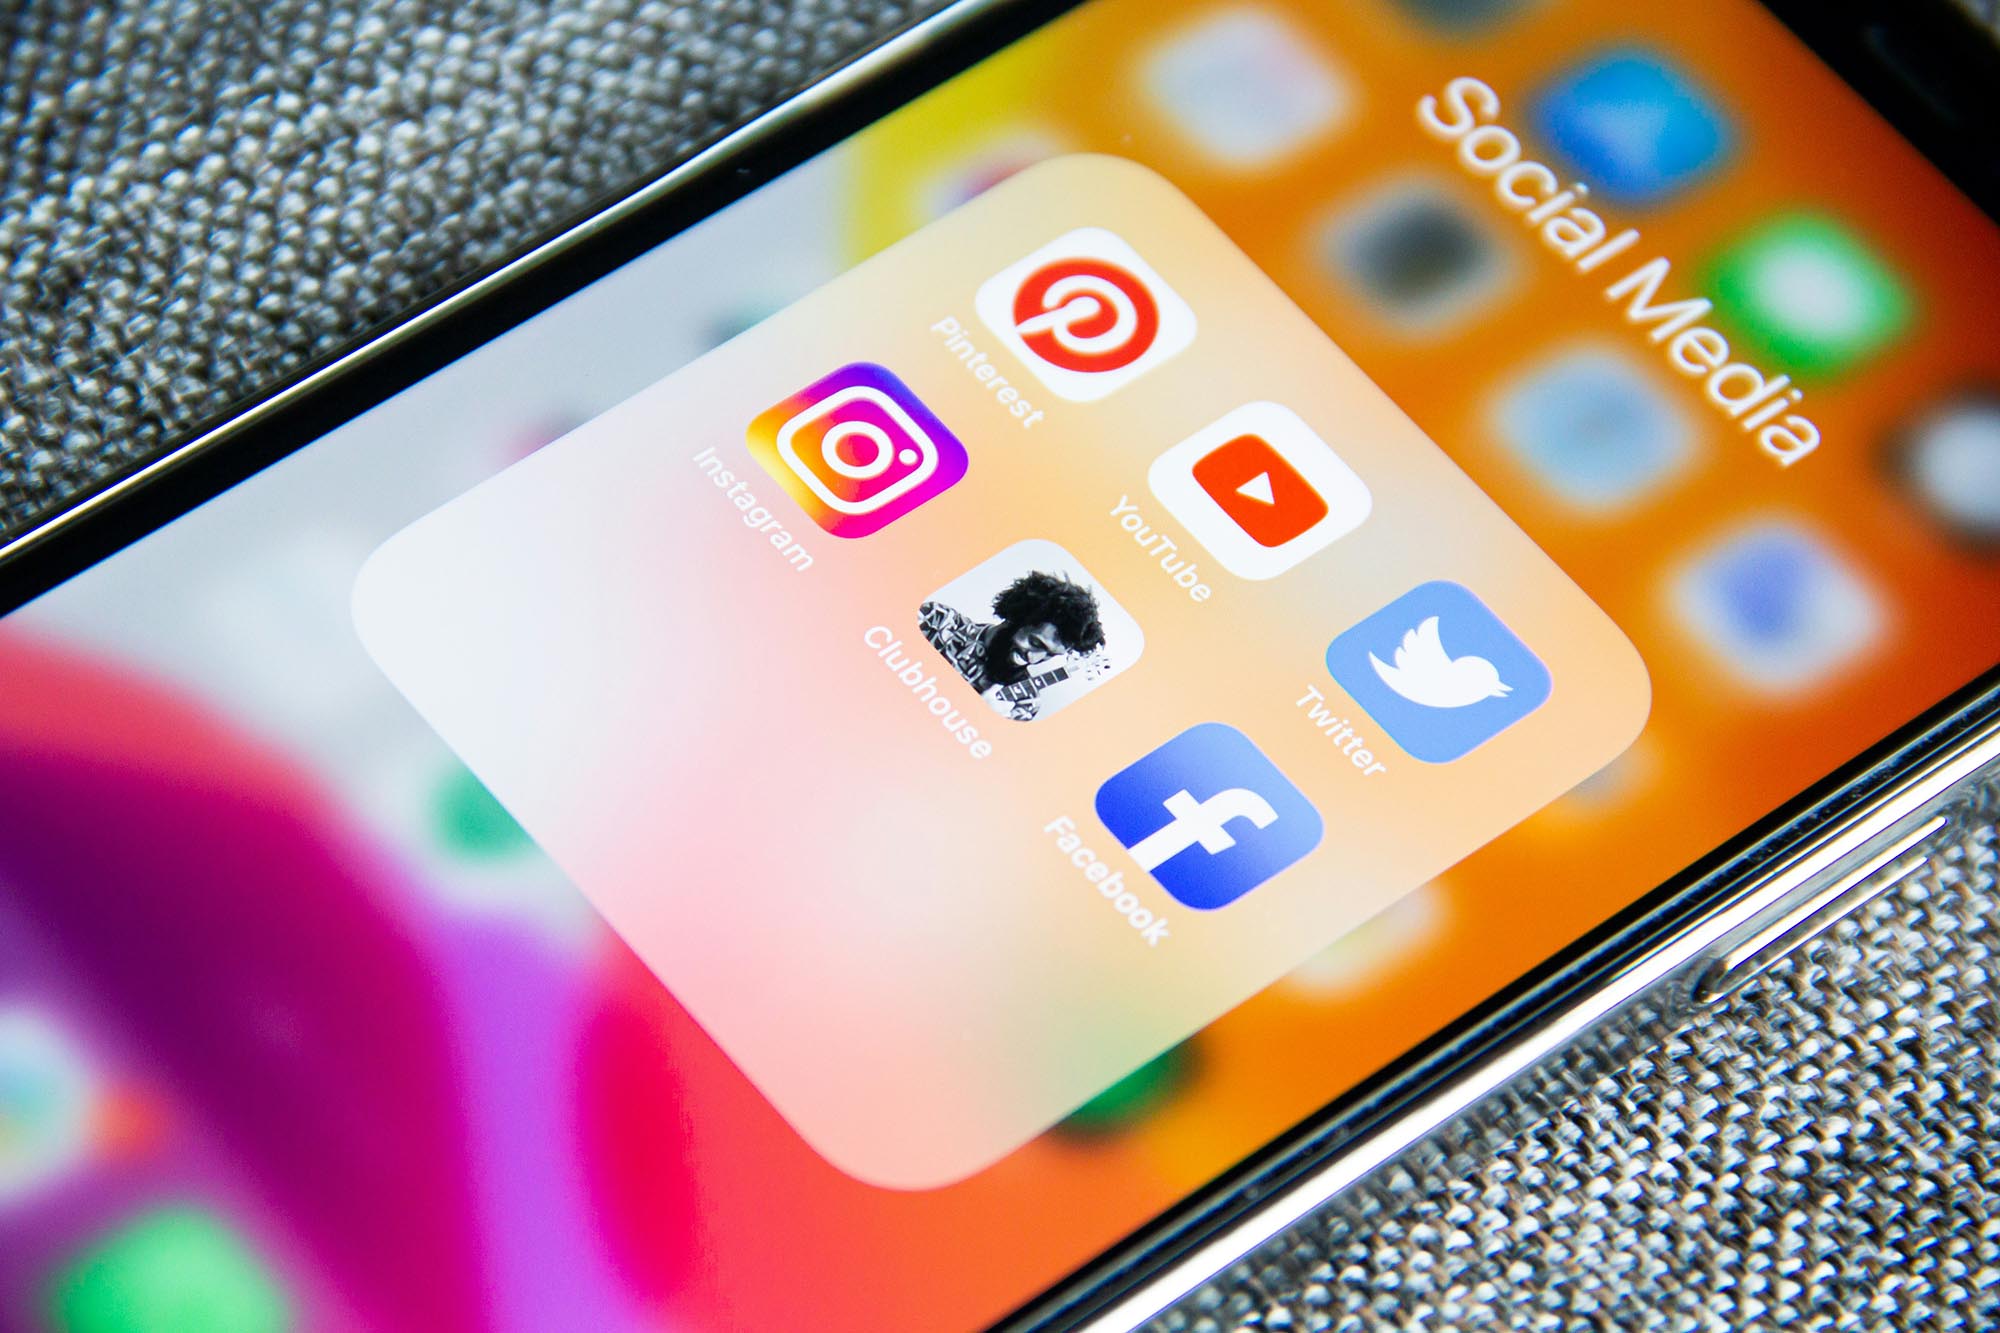 Eingeschaltetes Smartphone liegt diagonal auf einem grauen Stoff. Auf dem Screen sieht man Logos verschiedener Social-Media-Plattformen.